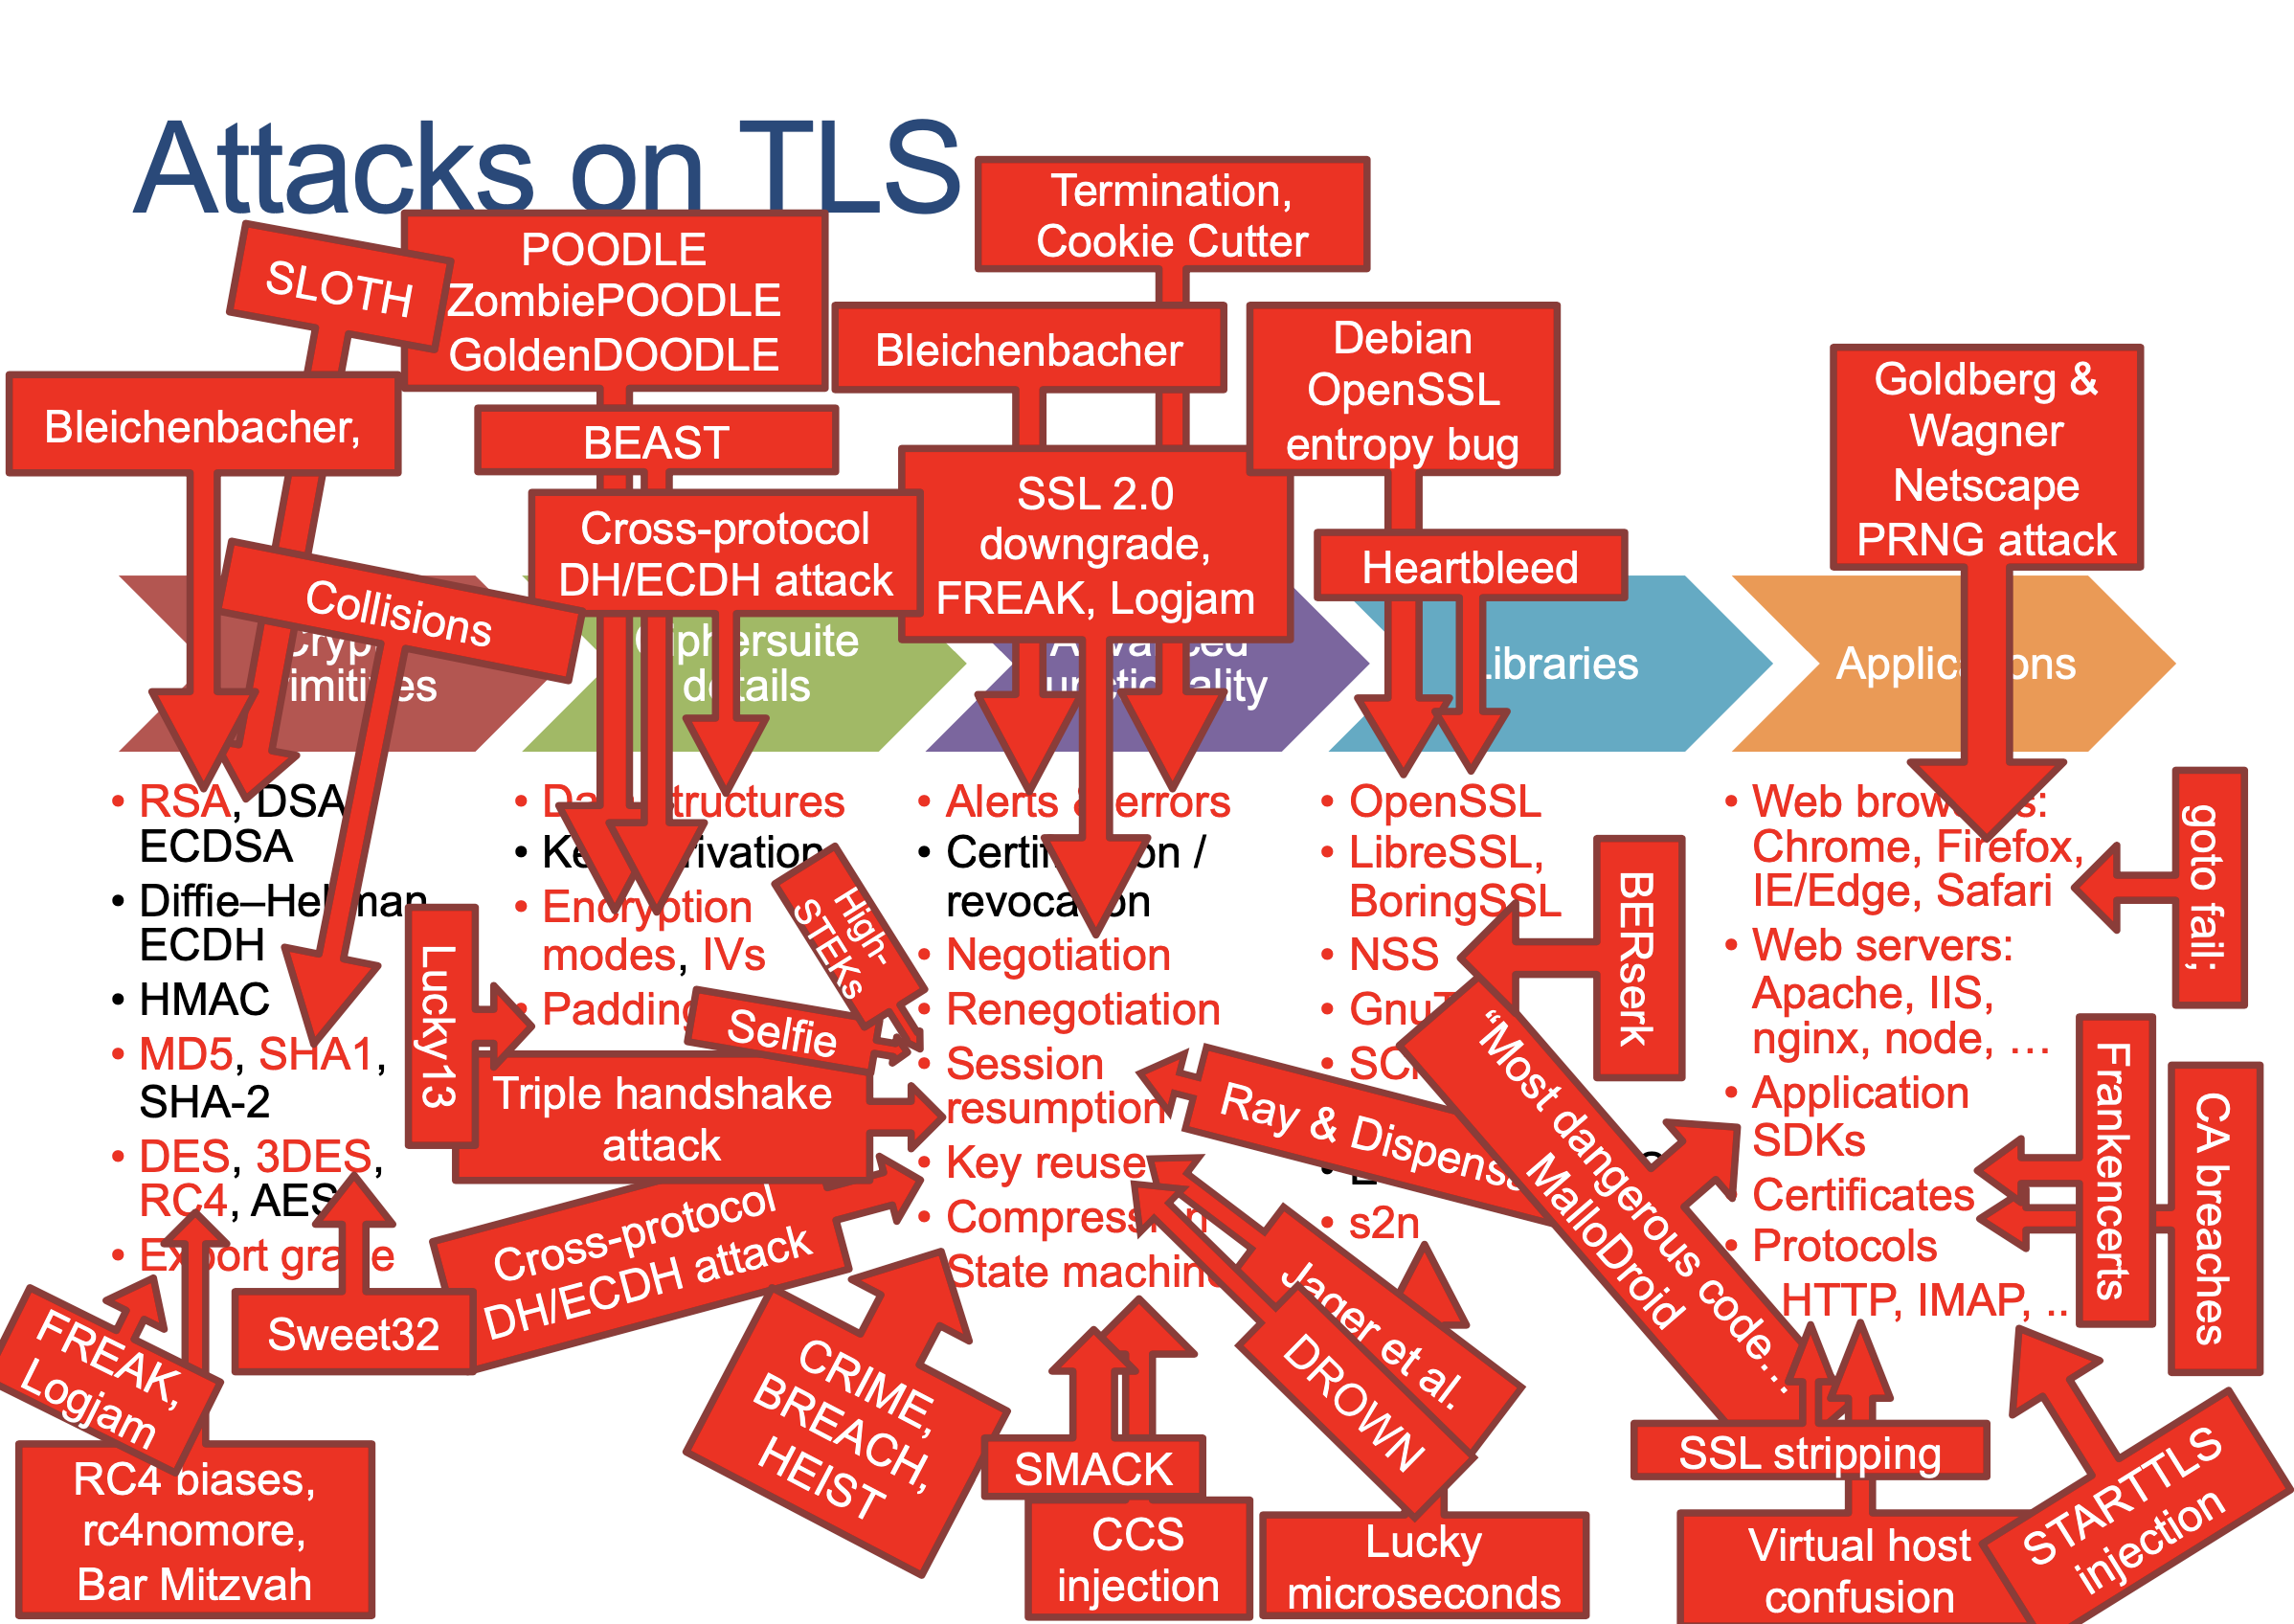 Attacks on TLS